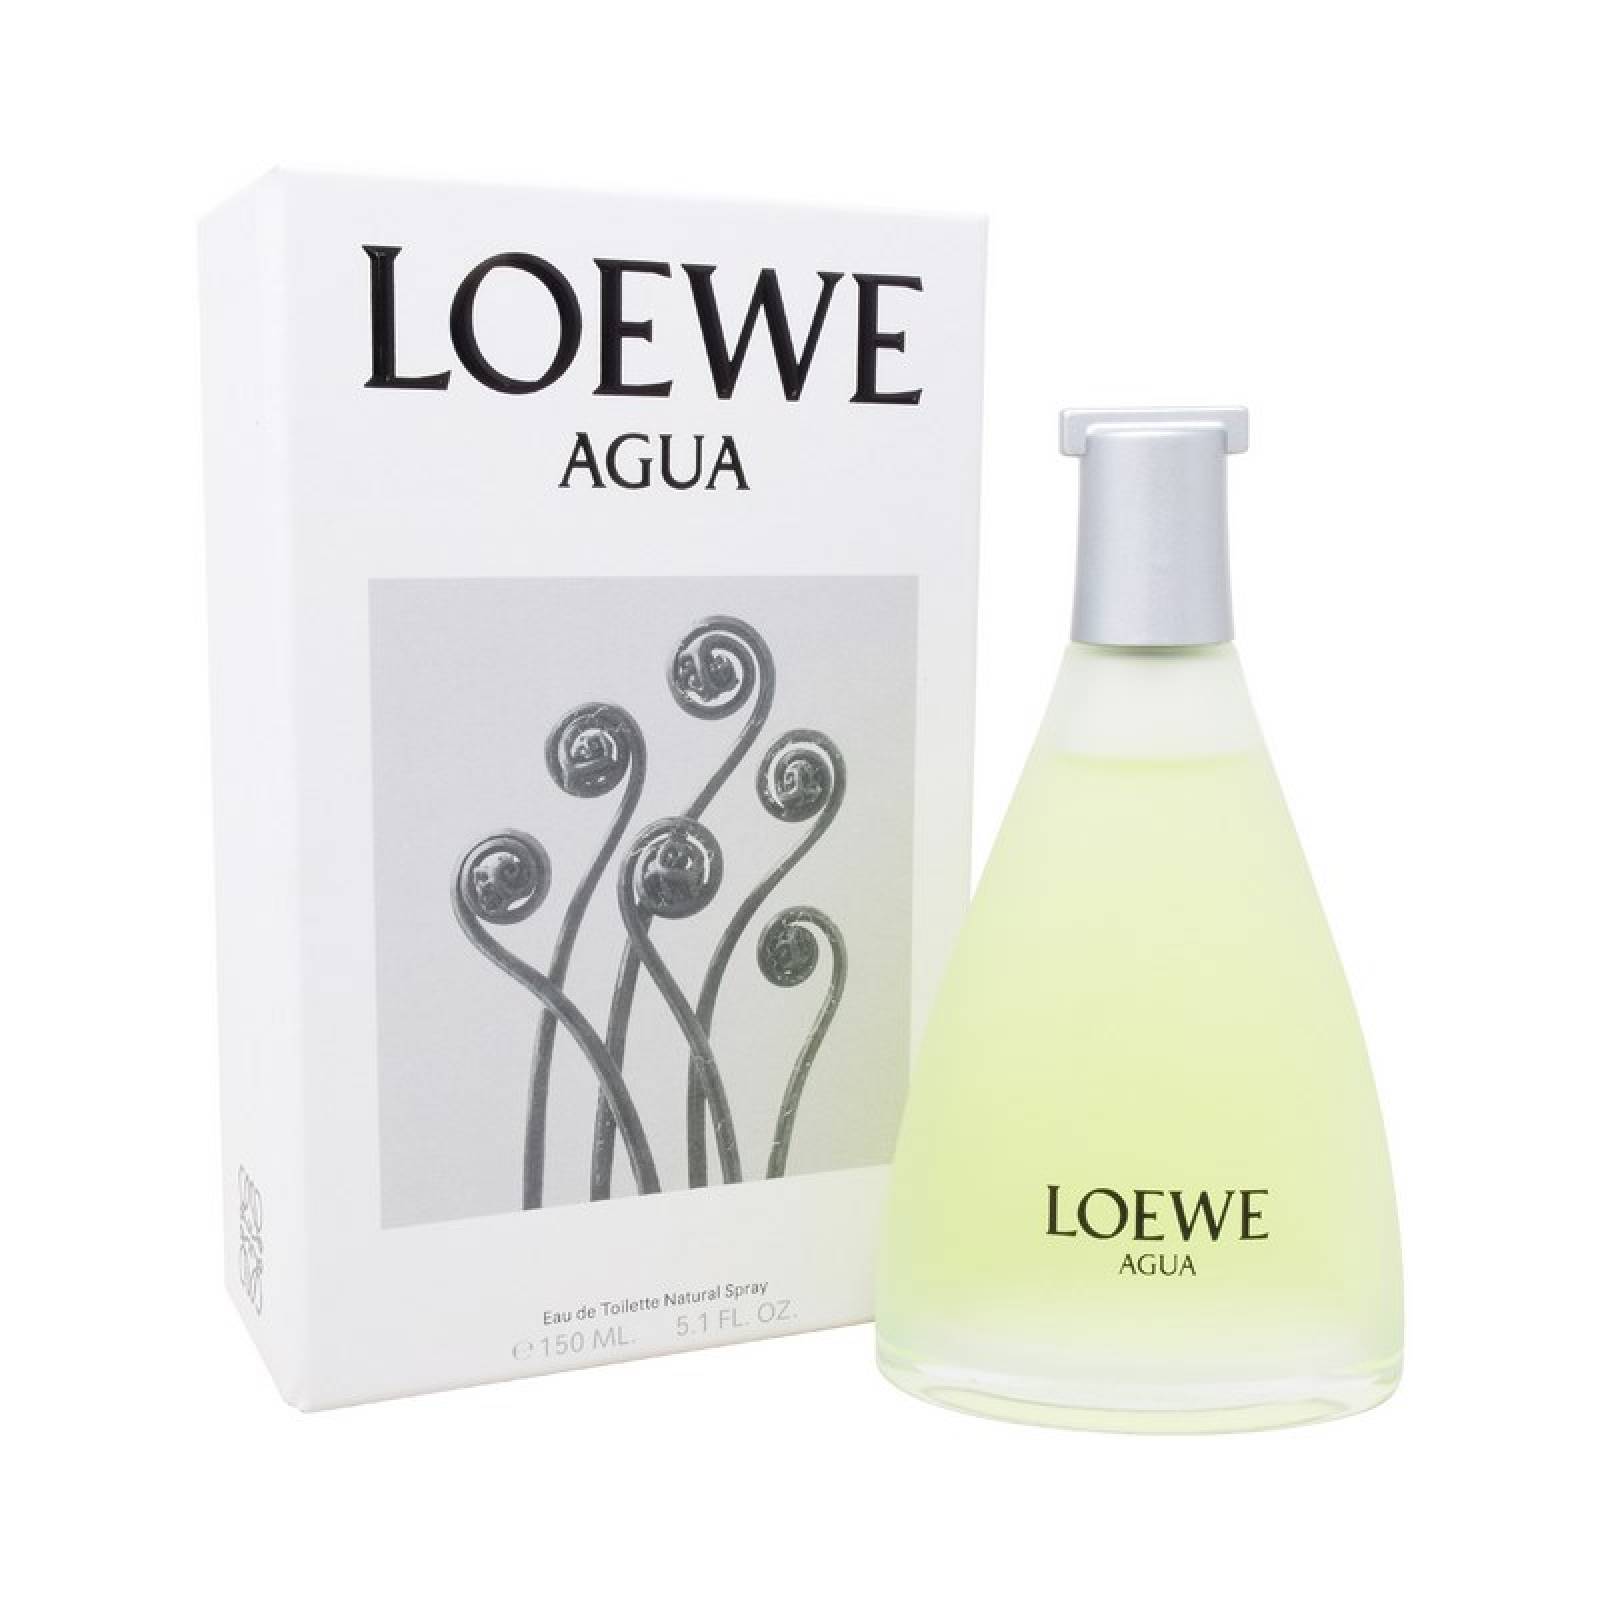 Agua De Loewe 150 ml Eau de Toilette de Loewe